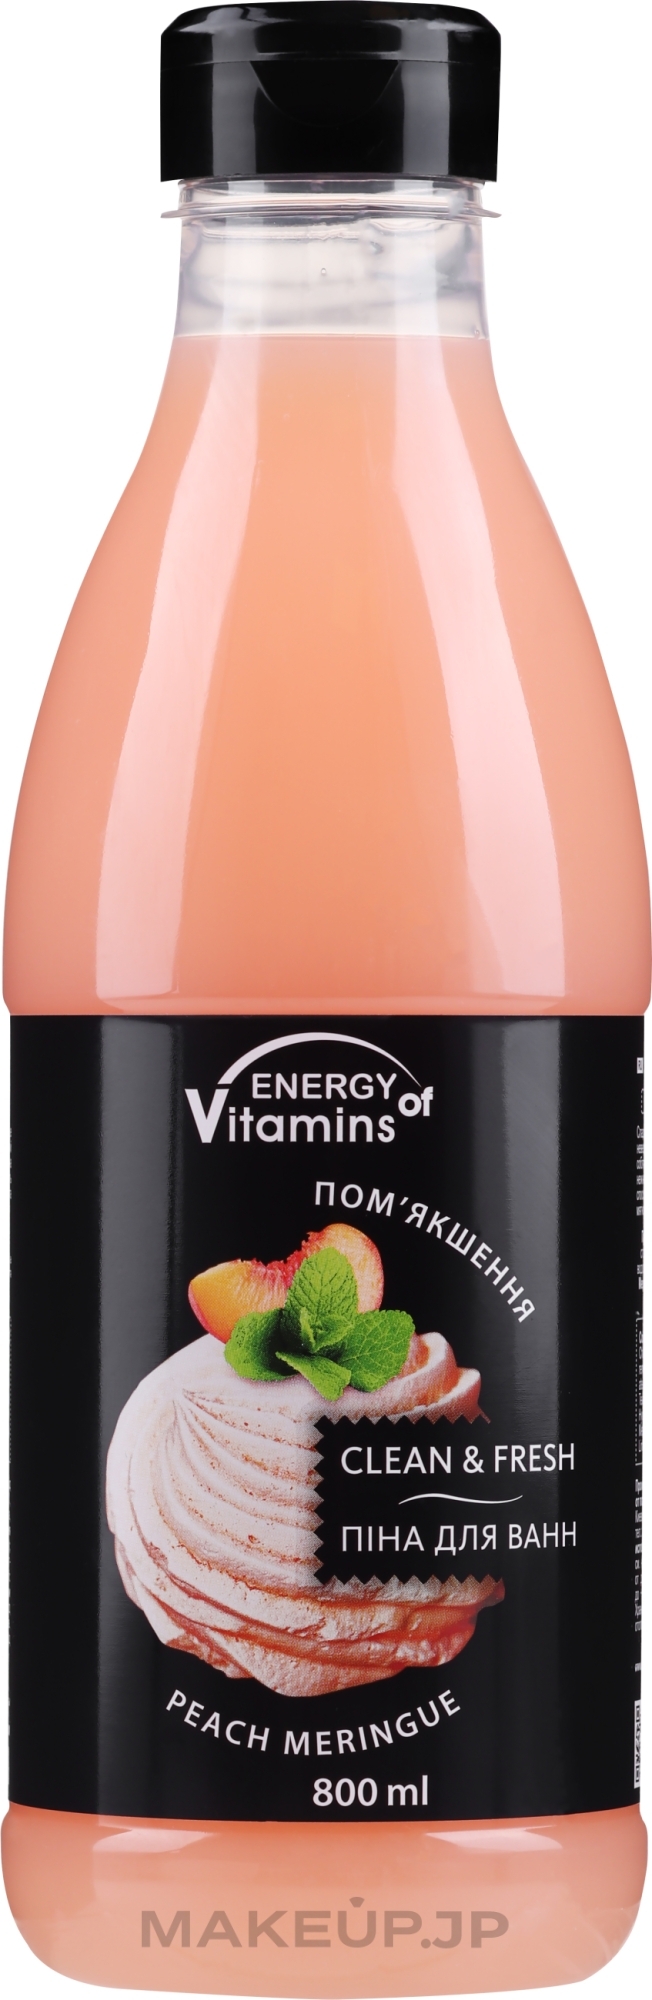 Peach Foam Bath Shake - Vkusnyye Sekrety Energy of Vitamins — photo 800 ml